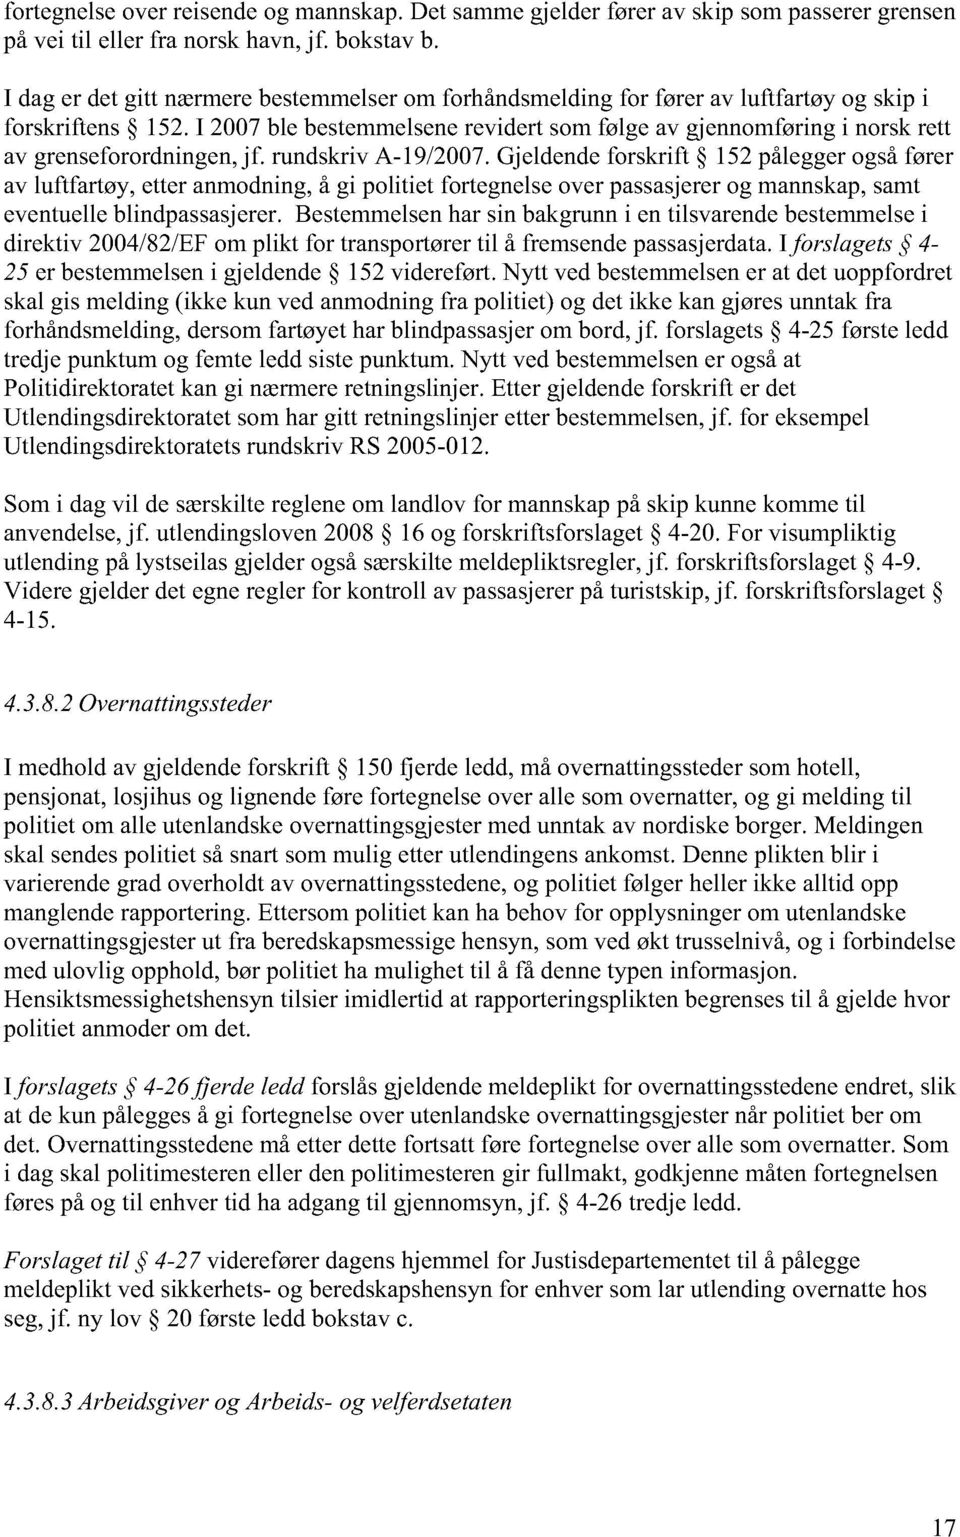 I 2007 ble bestemmelsene revidert som følge av gjennomføring i norsk rett av grenseforordningen, jf. rundskriv A-19/2007.